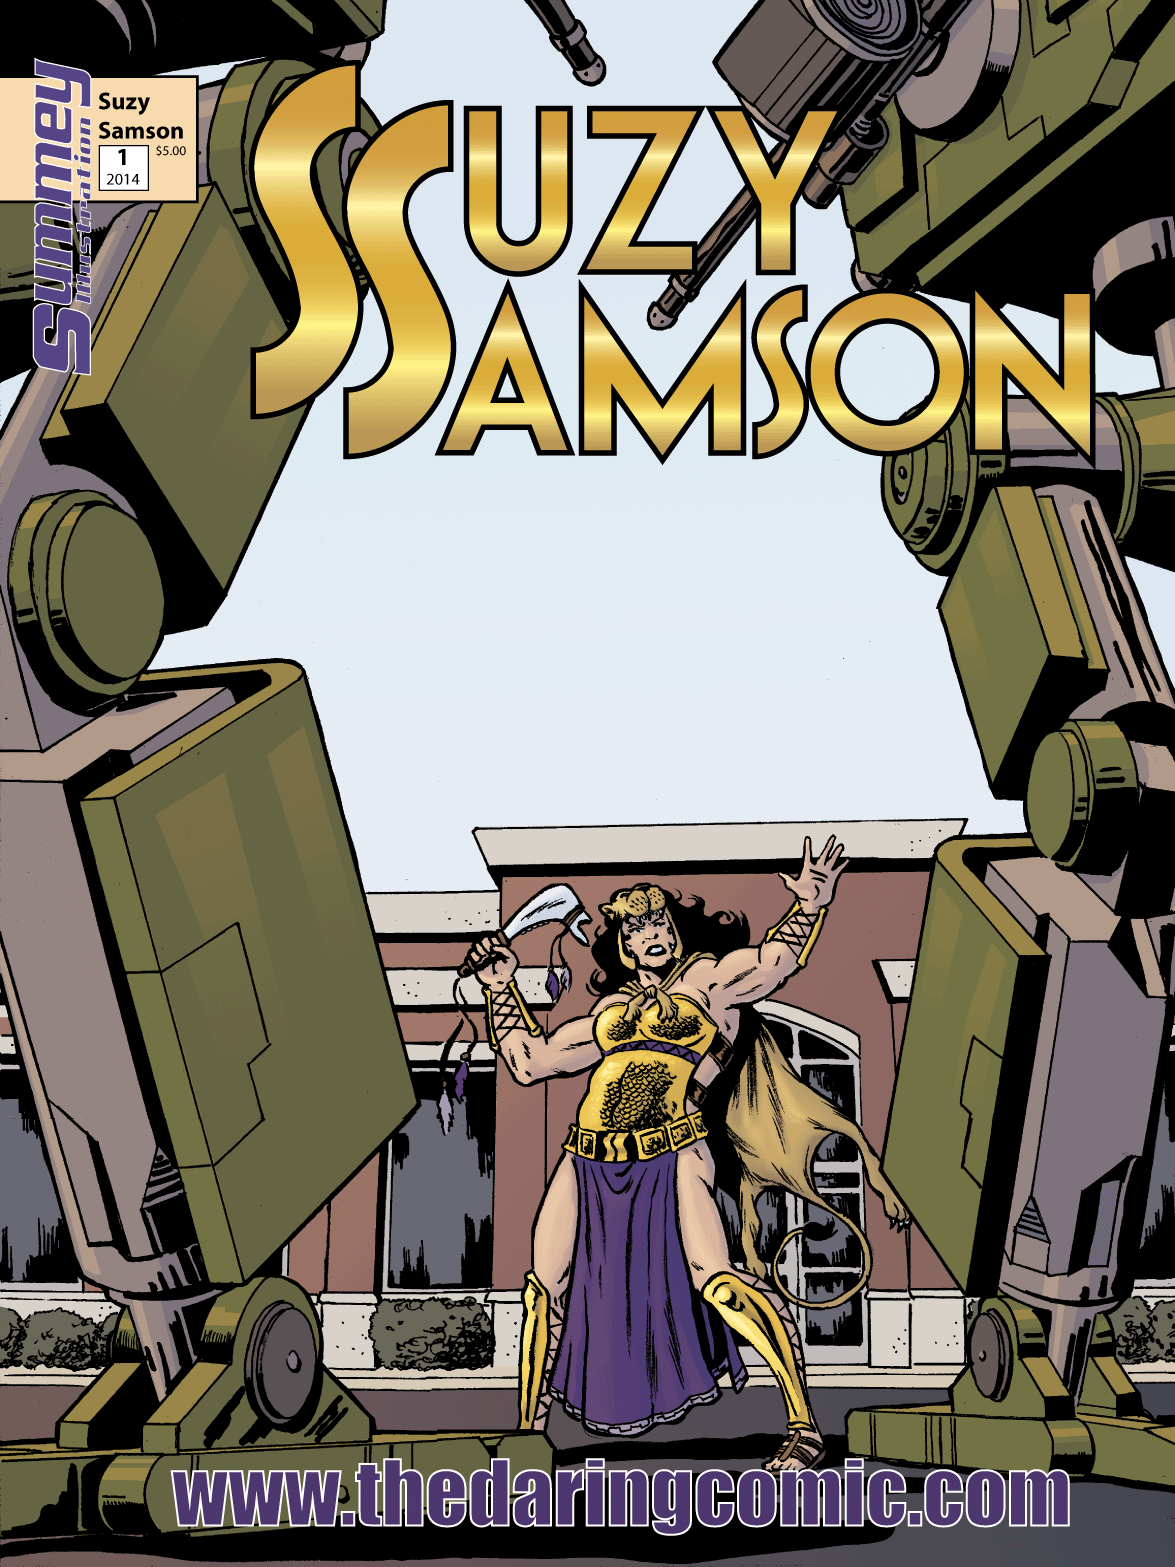 Suzy Samson  comics Sequential Art webcomics Comic Book